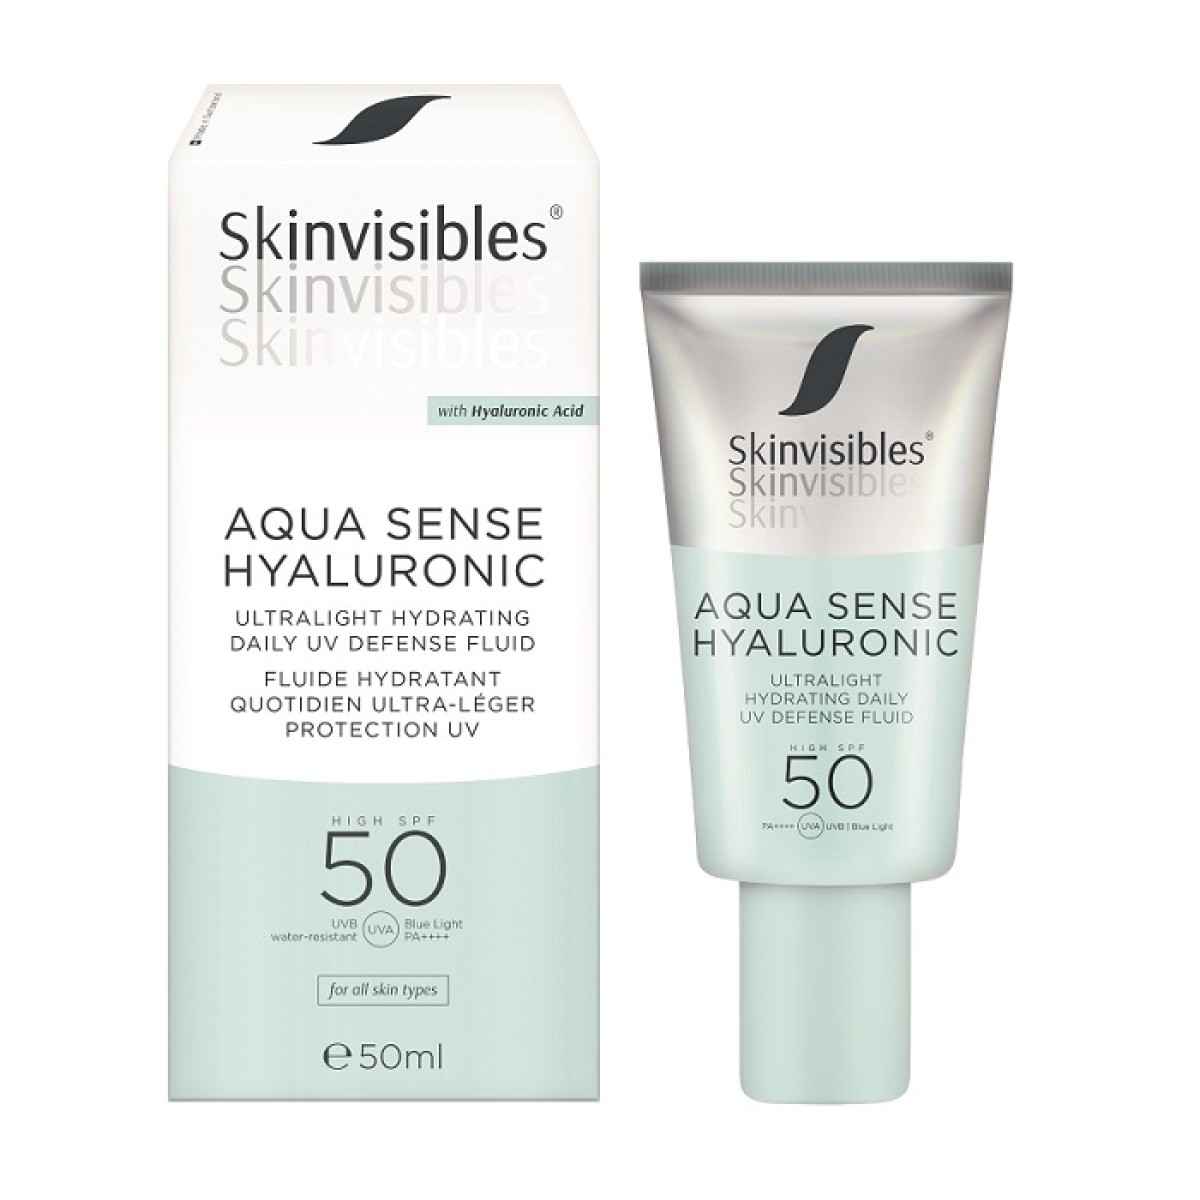 Skinvisibles Aqua Sense Hyaluronic SPF 50 50 ml.